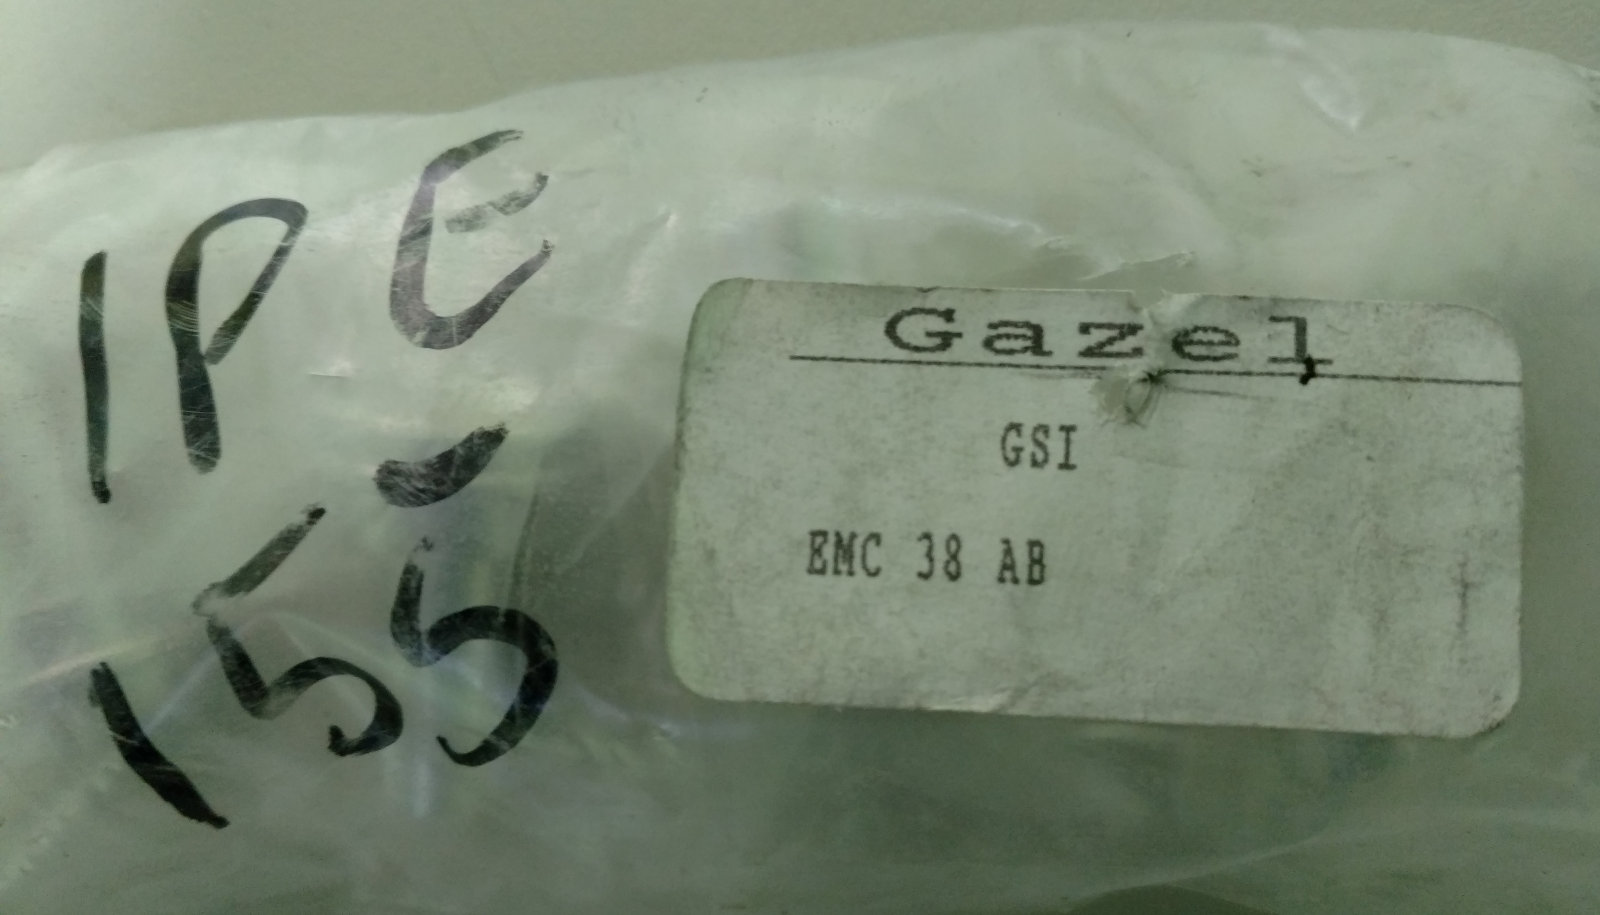 GAZEL EMC 38 AB